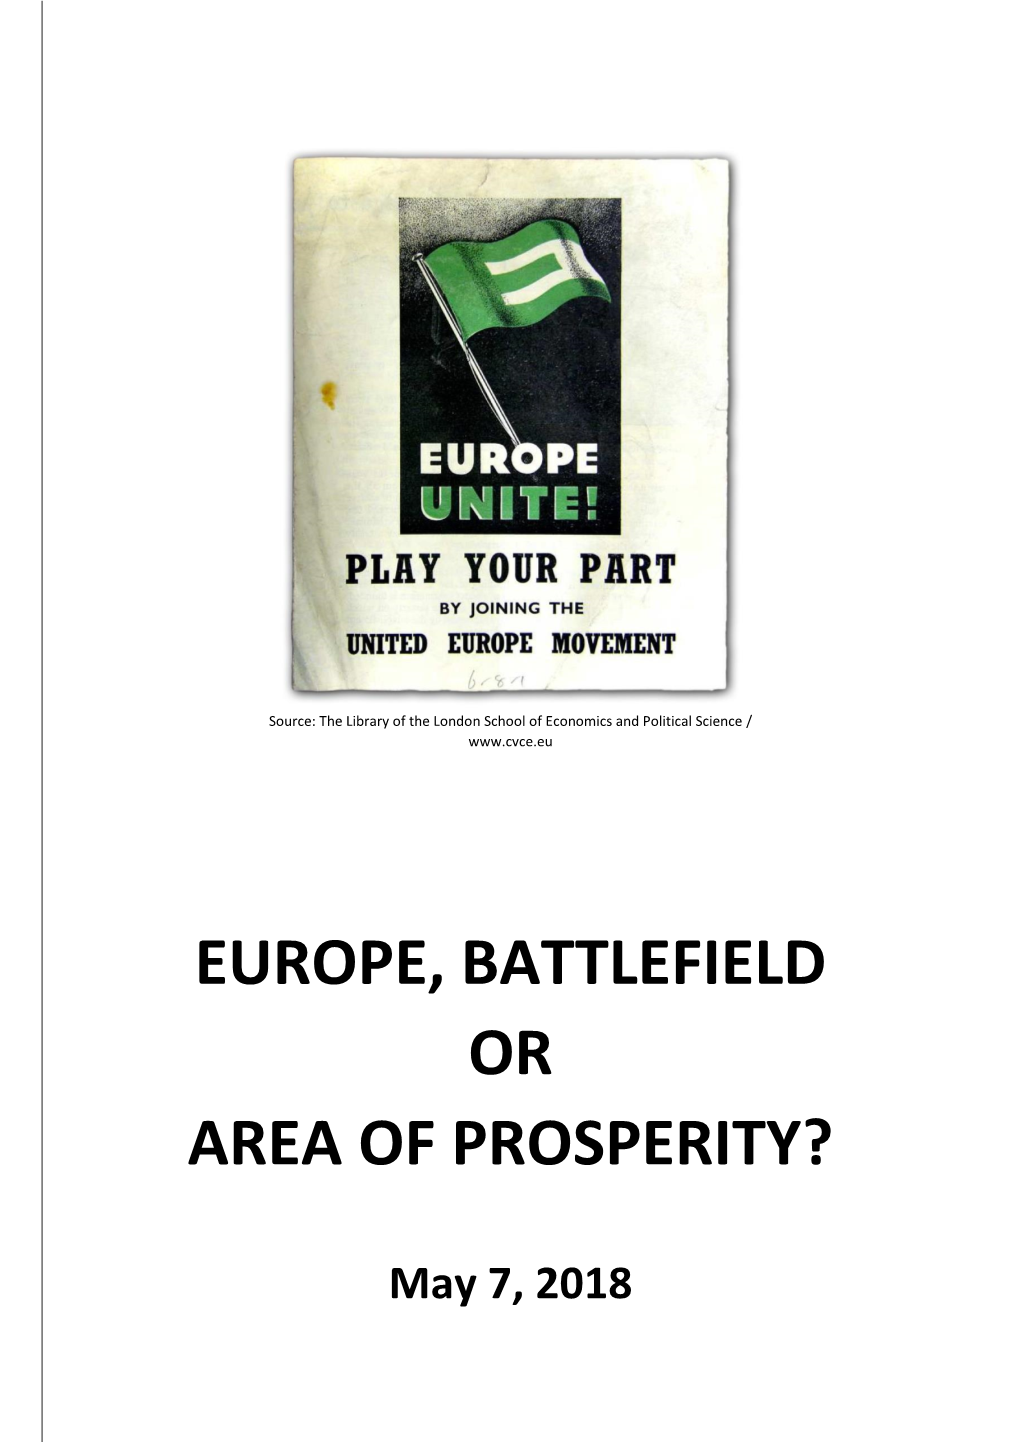 Europe, Battlefield Or Area of Prosperity?